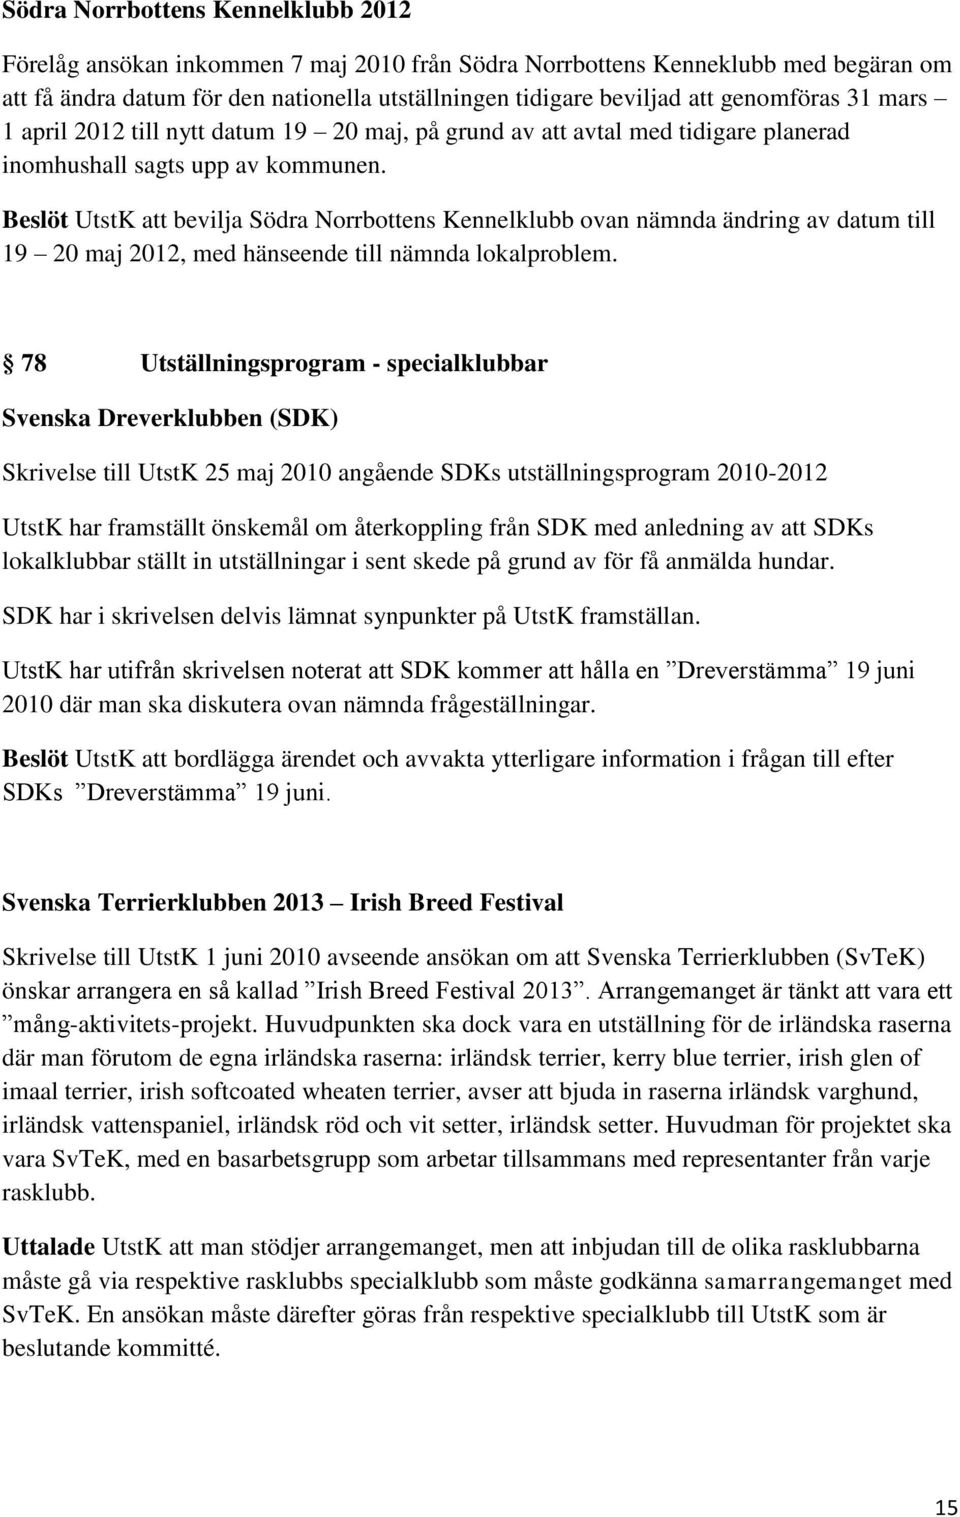 Beslöt UtstK att bevilja Södra Norrbottens Kennelklubb ovan nämnda ändring av datum till 19 20 maj 2012, med hänseende till nämnda lokalproblem.